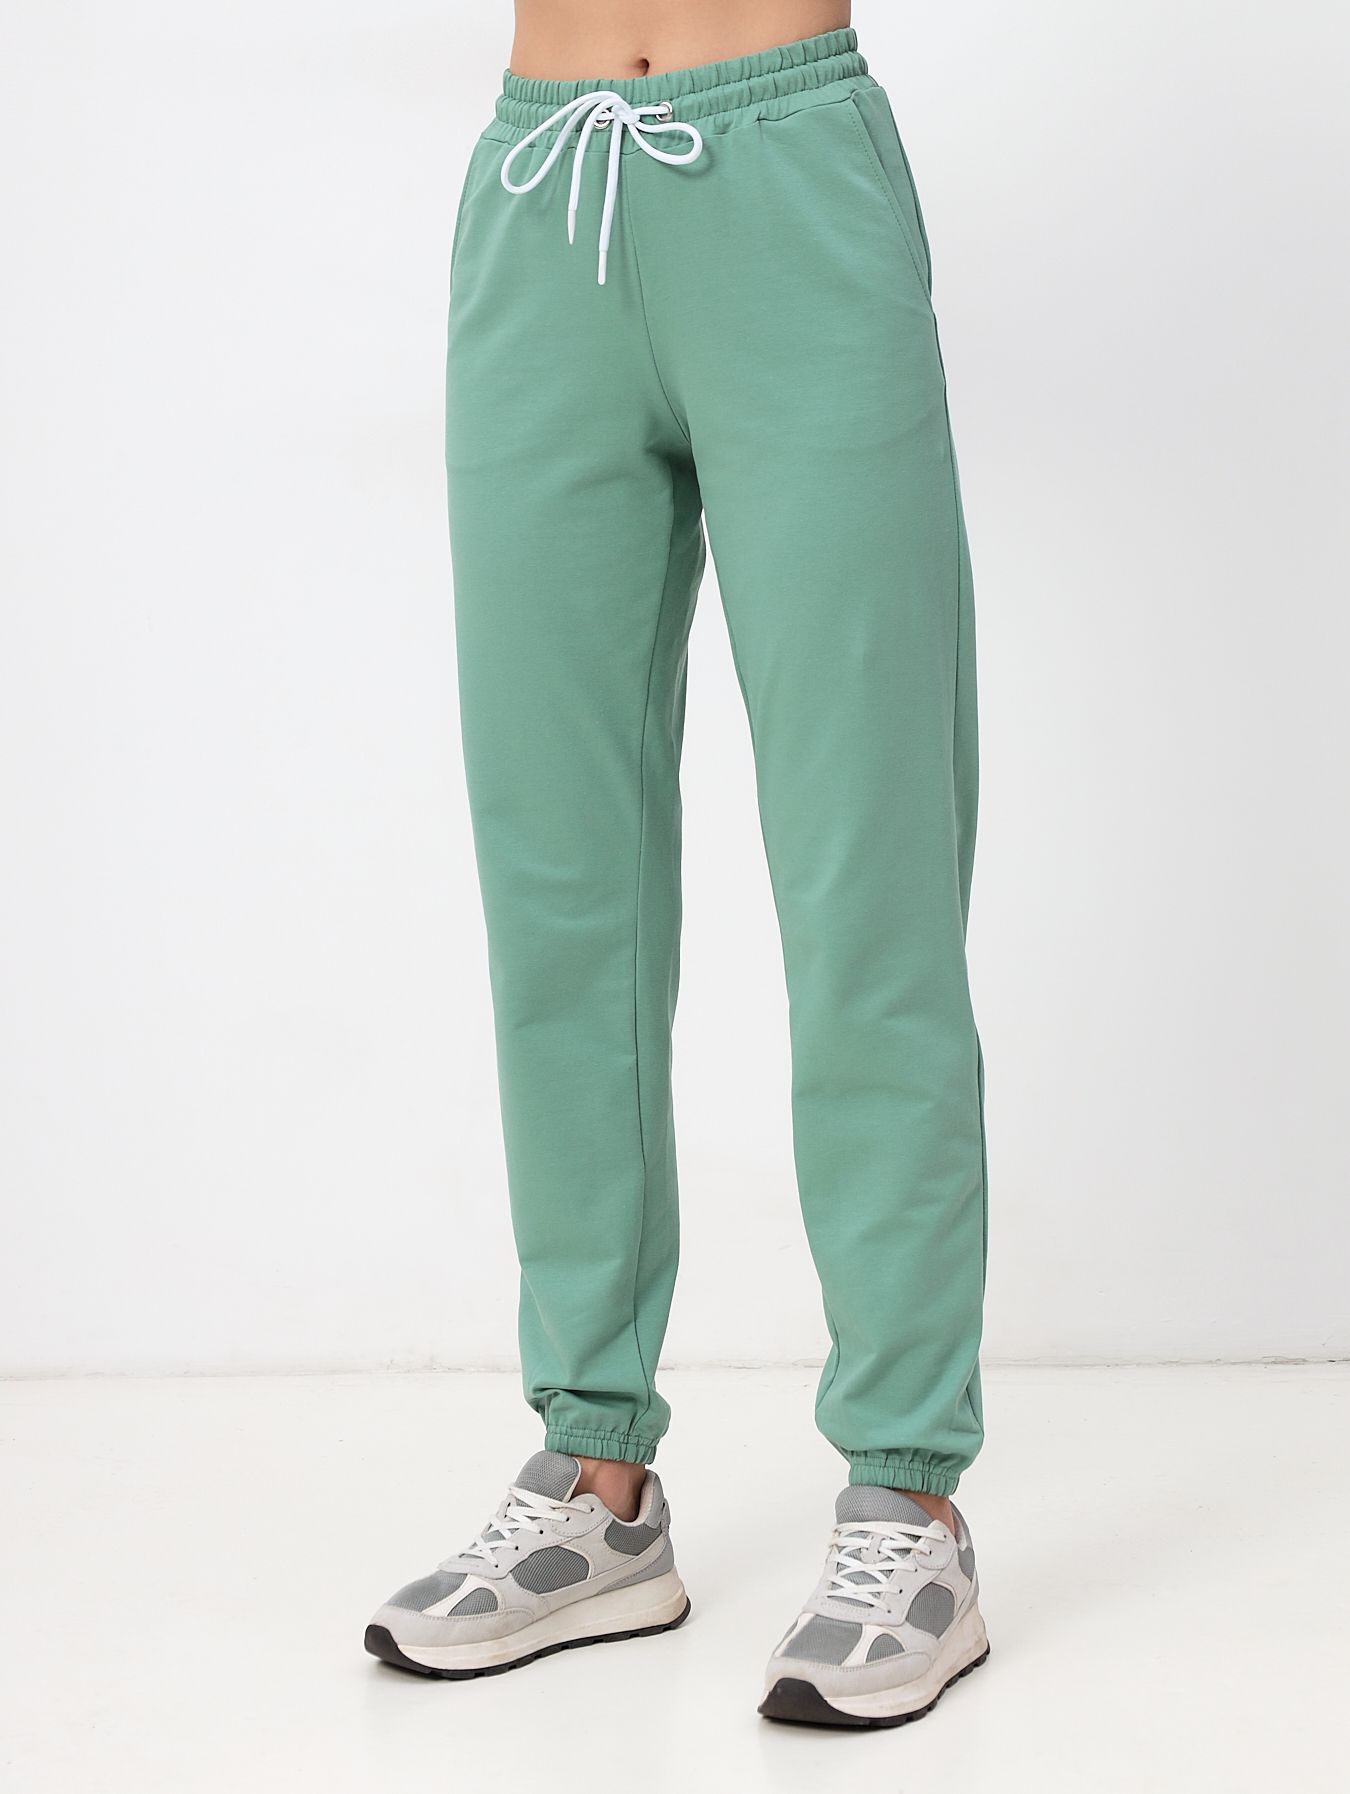 Спортивные брюки женские MOM №1 3170 зеленые 54 RU